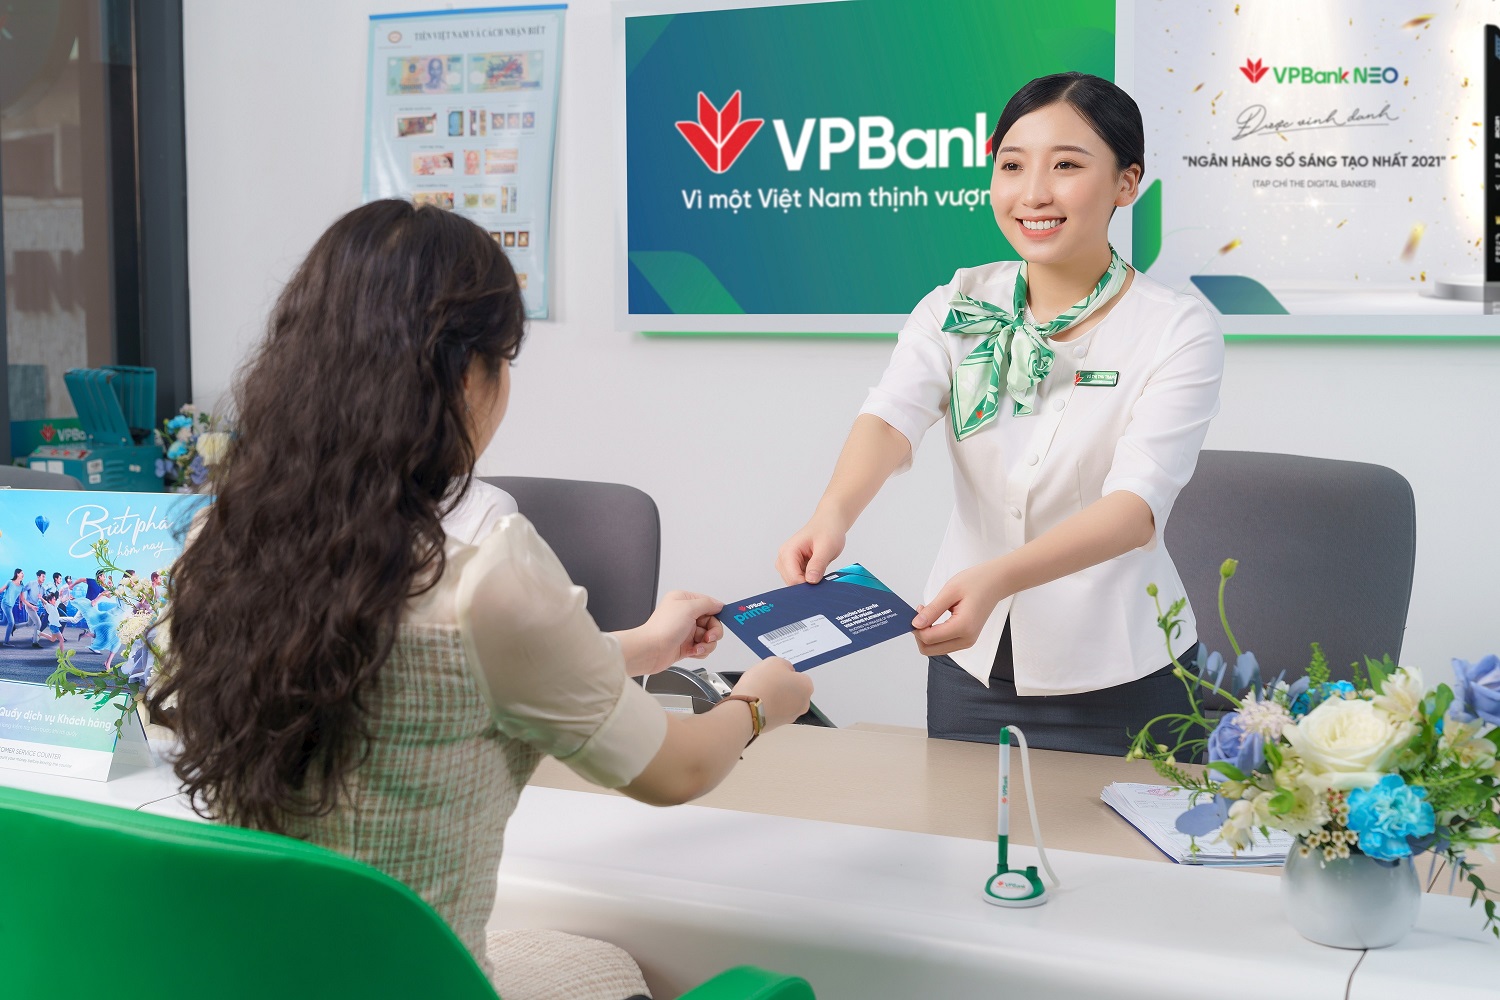 VPBank huy động thành công khoản vay hợp vốn quốc tế trị giá 600 triệu USD - Ảnh 1.